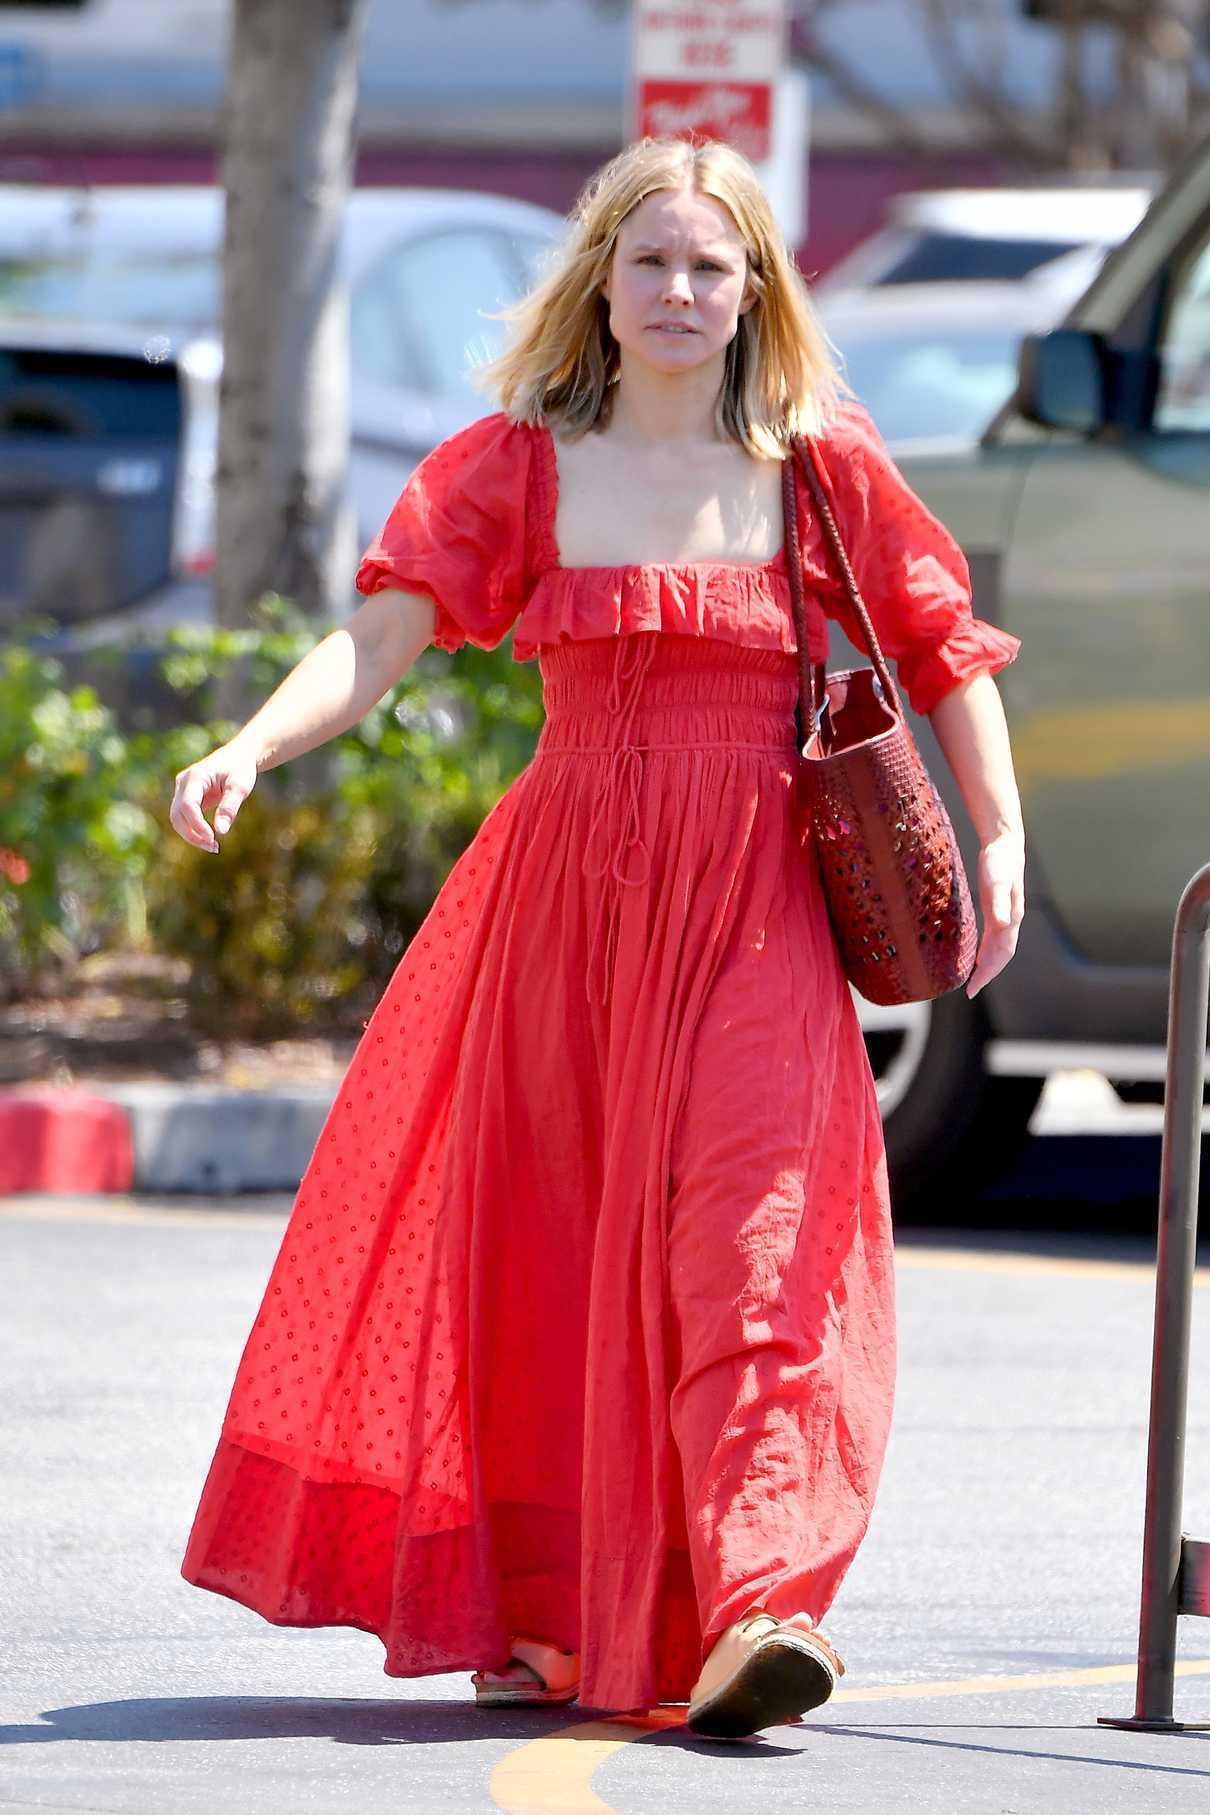 Kristen Bell in a Red Renaissance Faire Inspired Dress